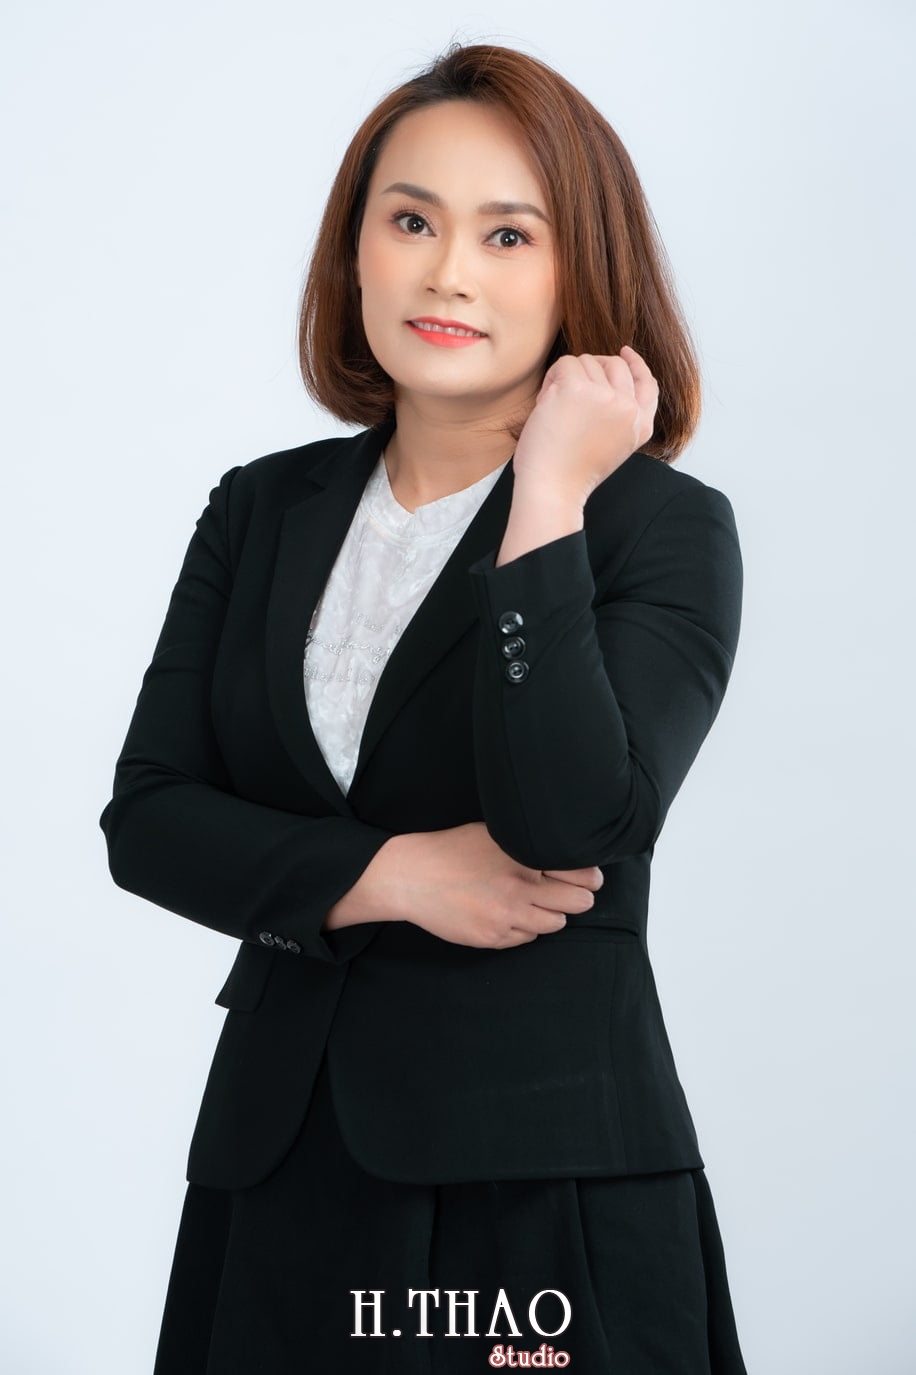 Anh Profile 2 - Album ảnh doanh nhân nữ: chị Kim đẹp nhẹ nhàng - HThao Studio